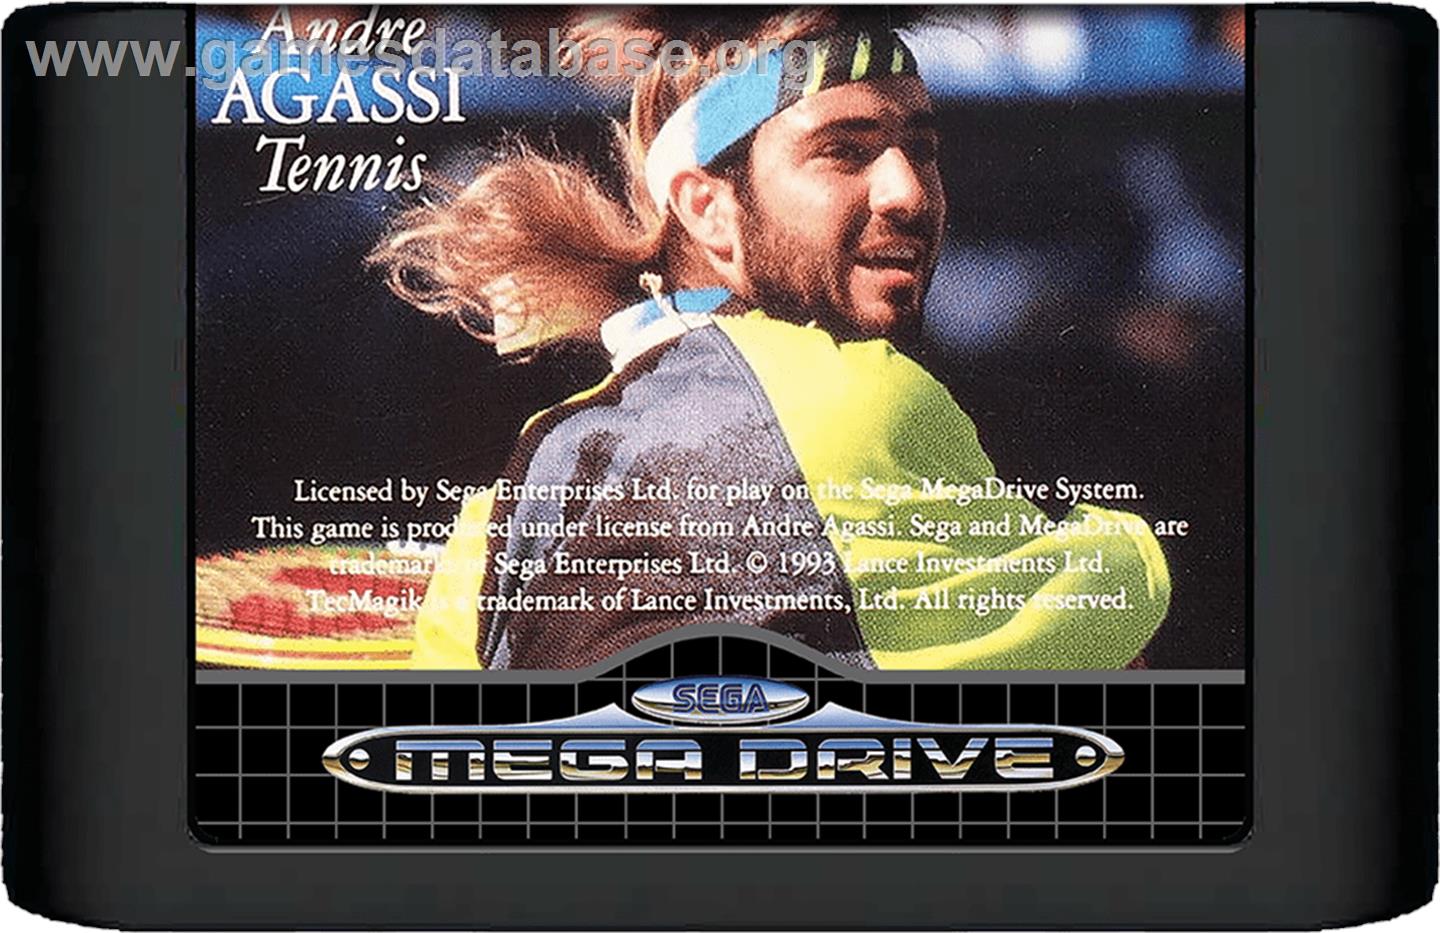 Andre Agassi Tennis - Sega Genesis - Artwork - Cartridge